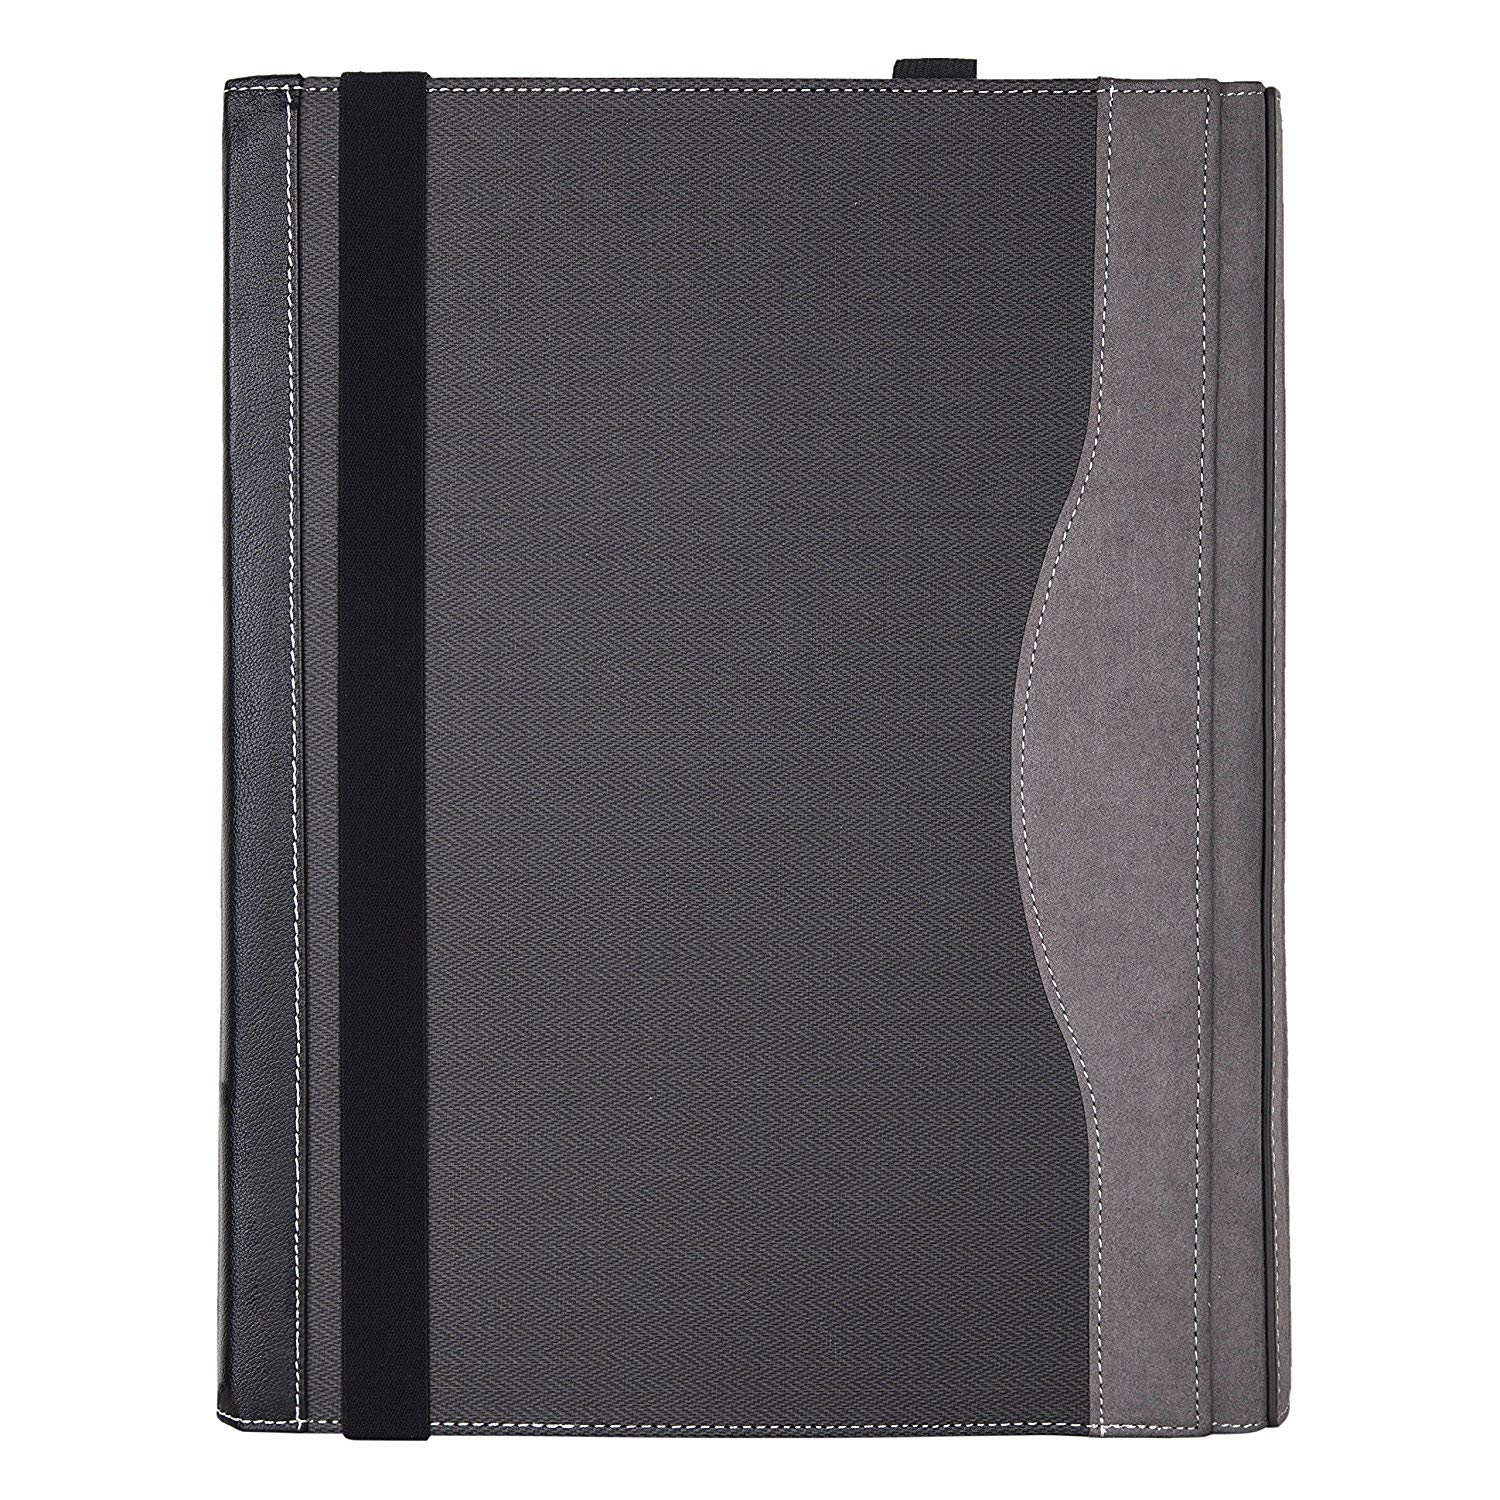 Hifriend Surface Book 2 case